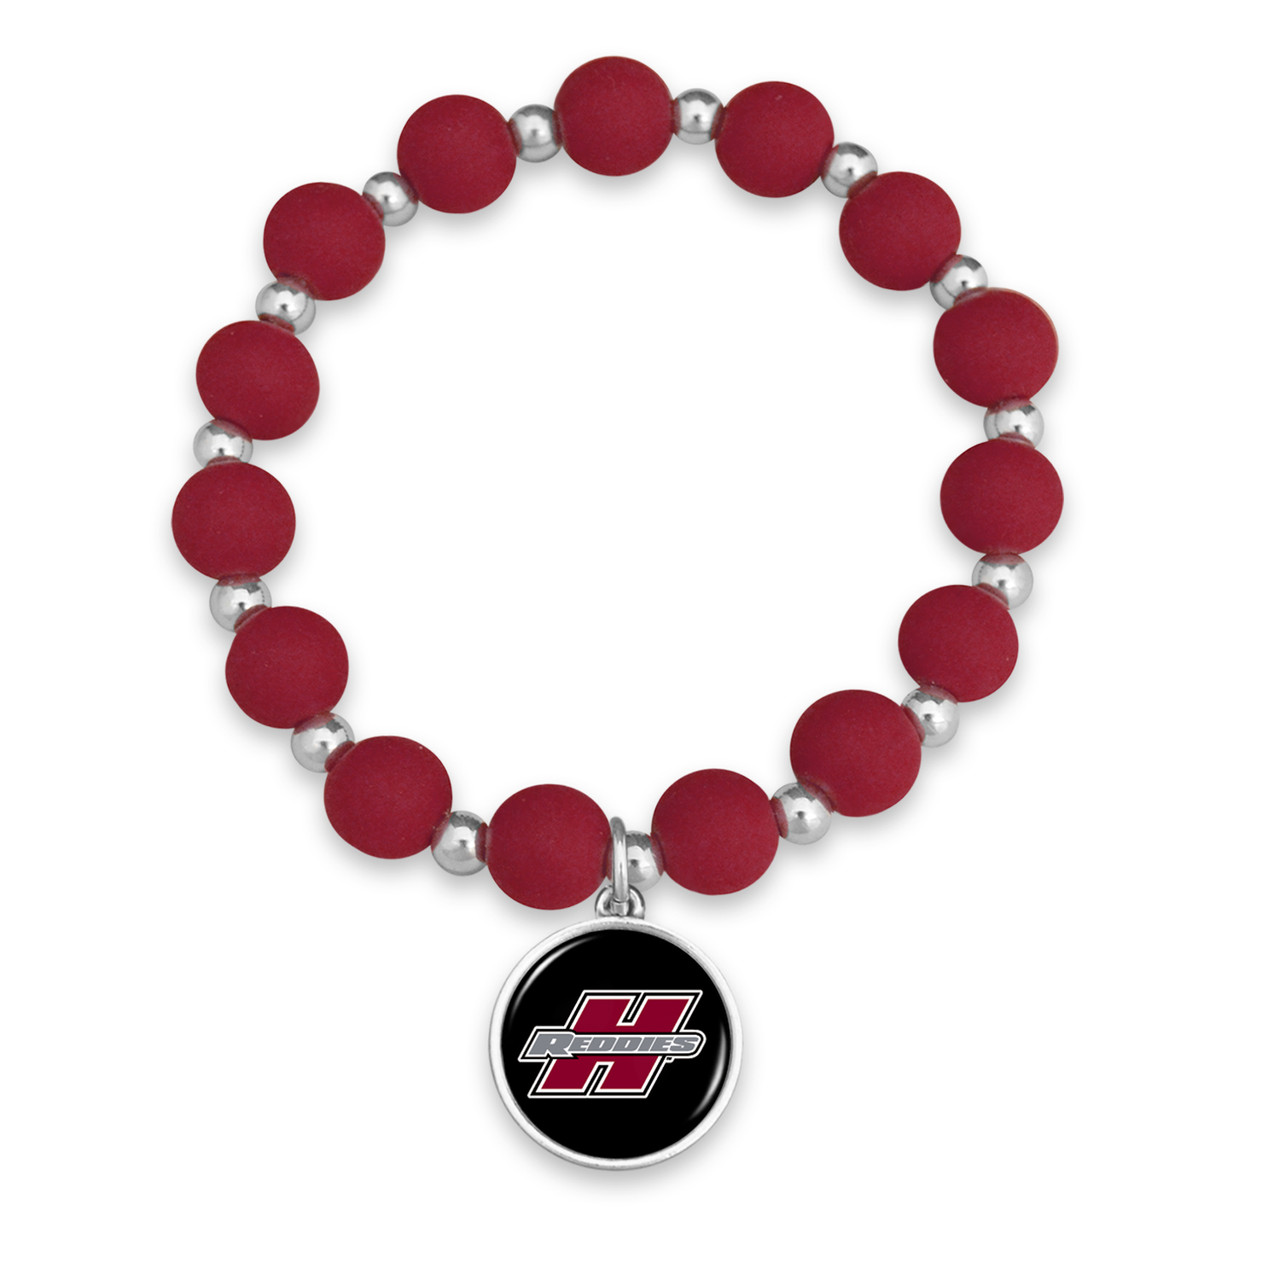 Henderson State Reddies Bracelet- Leah